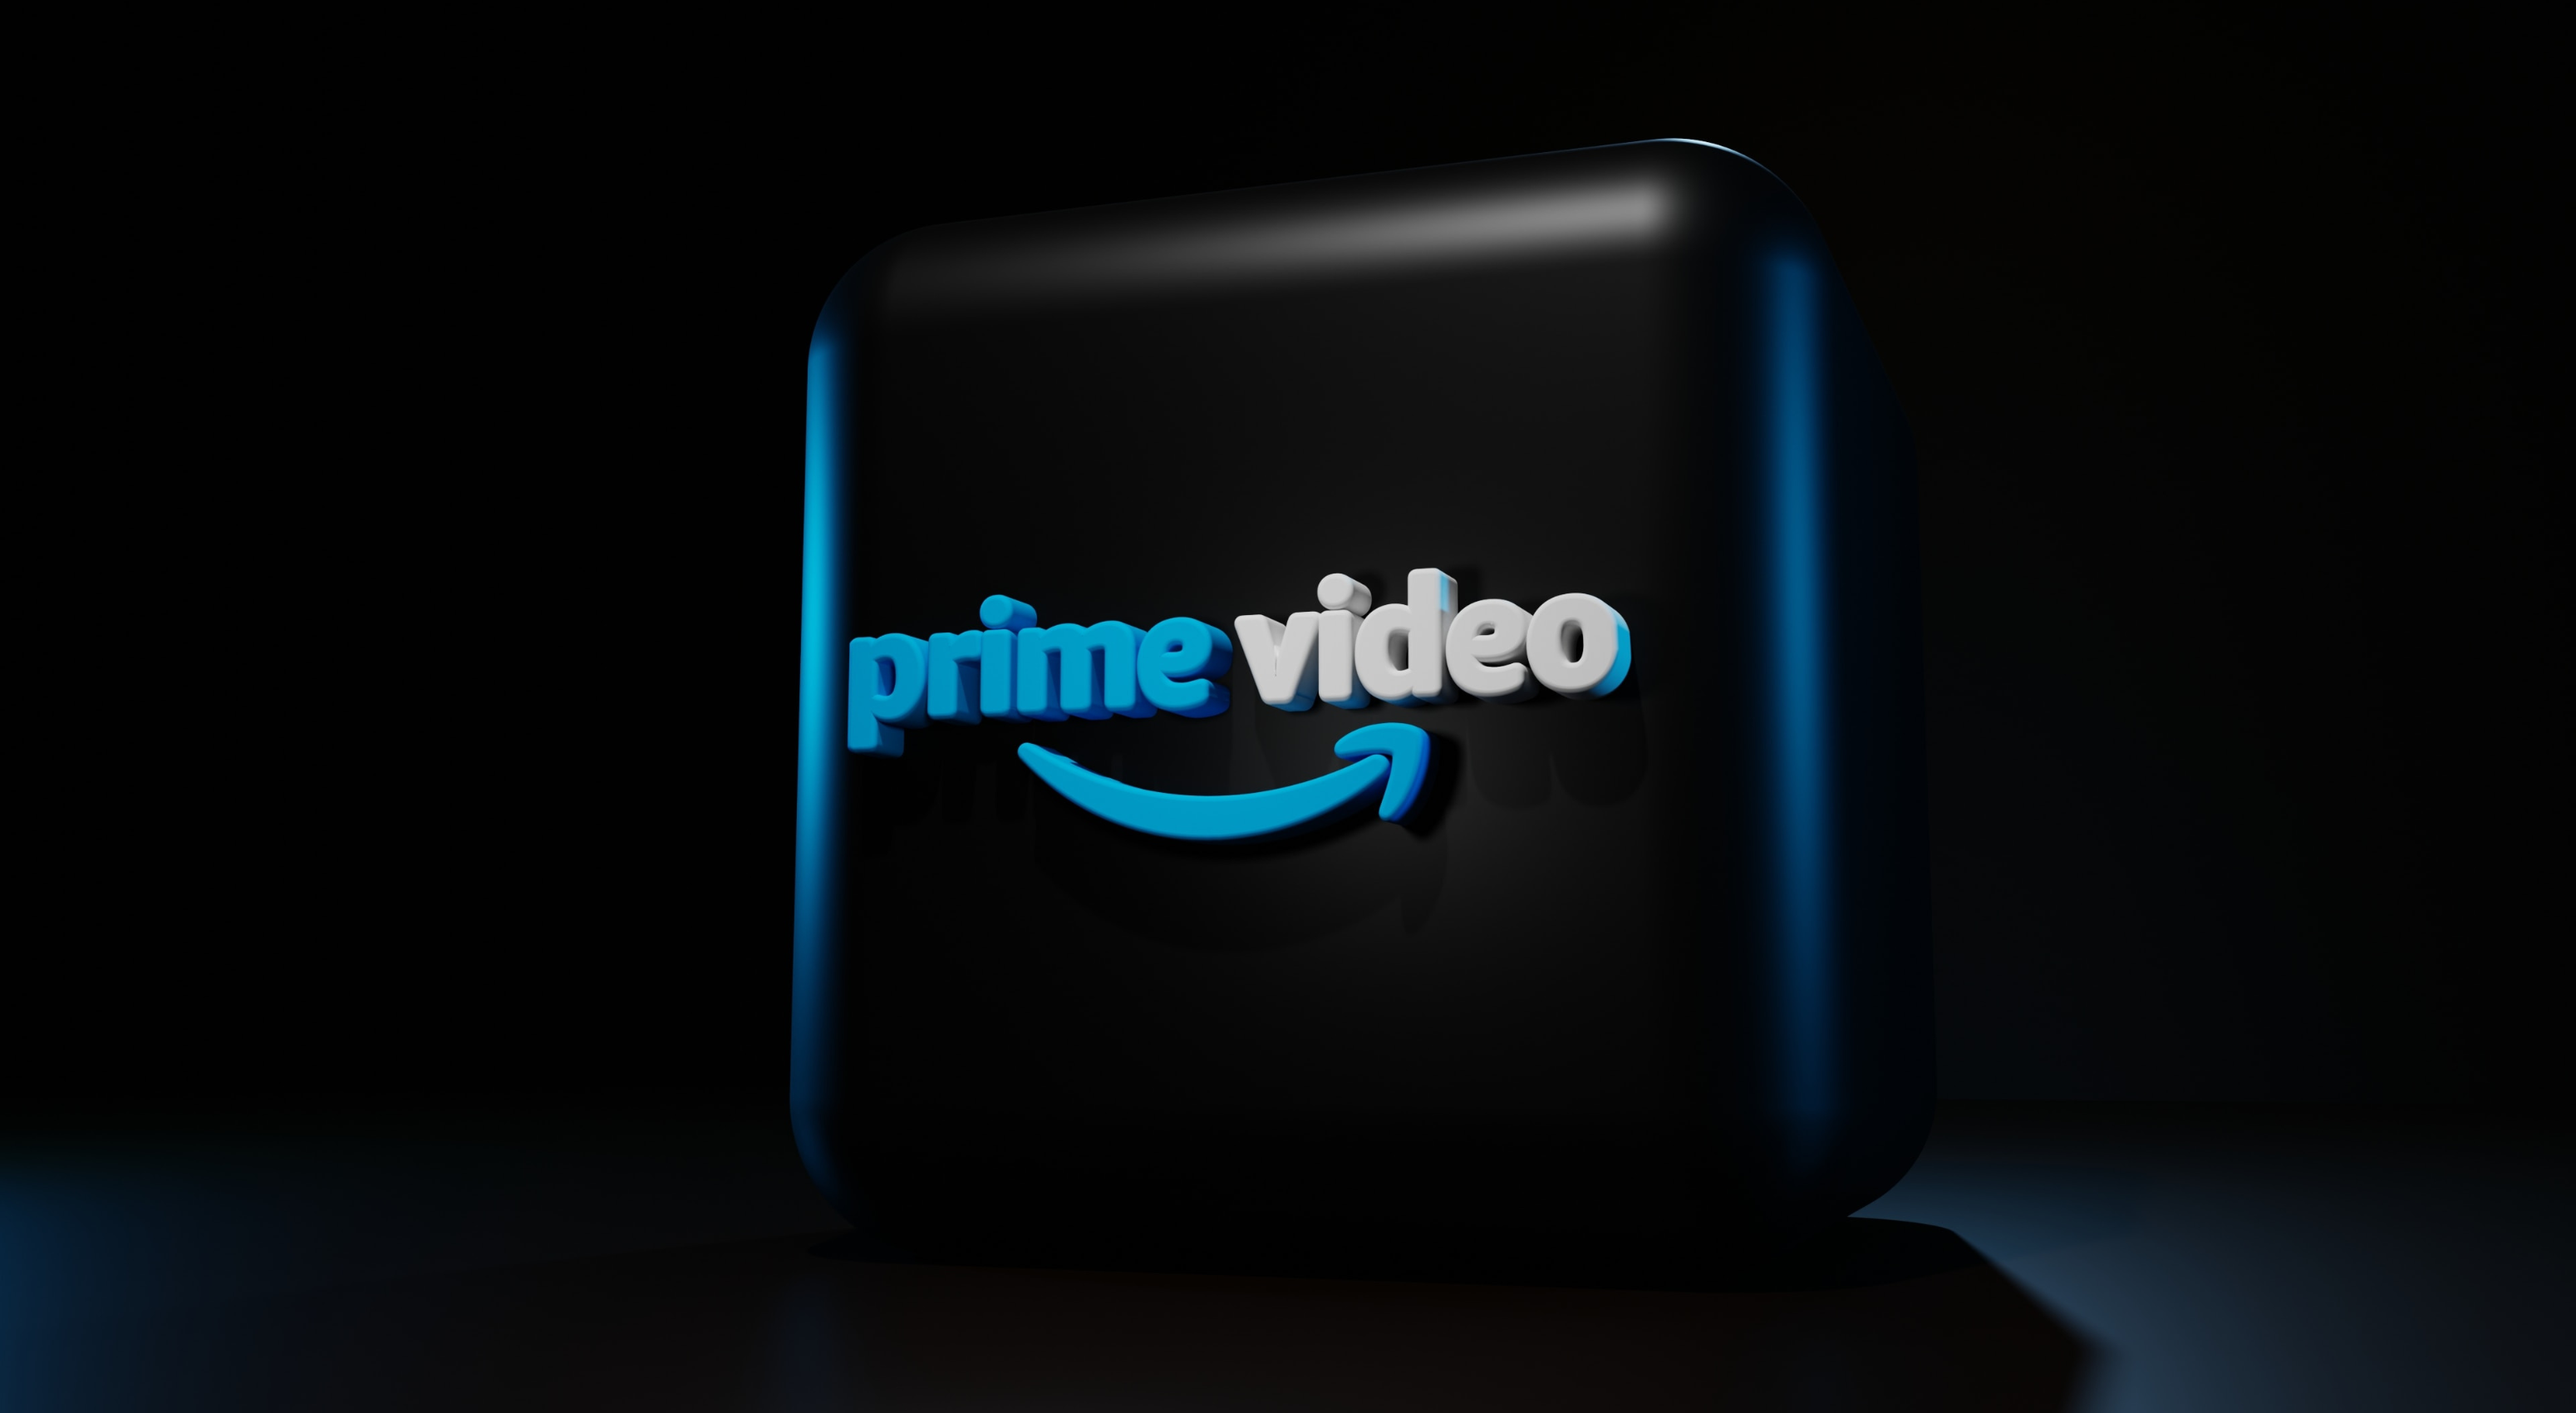 Prime Video logo